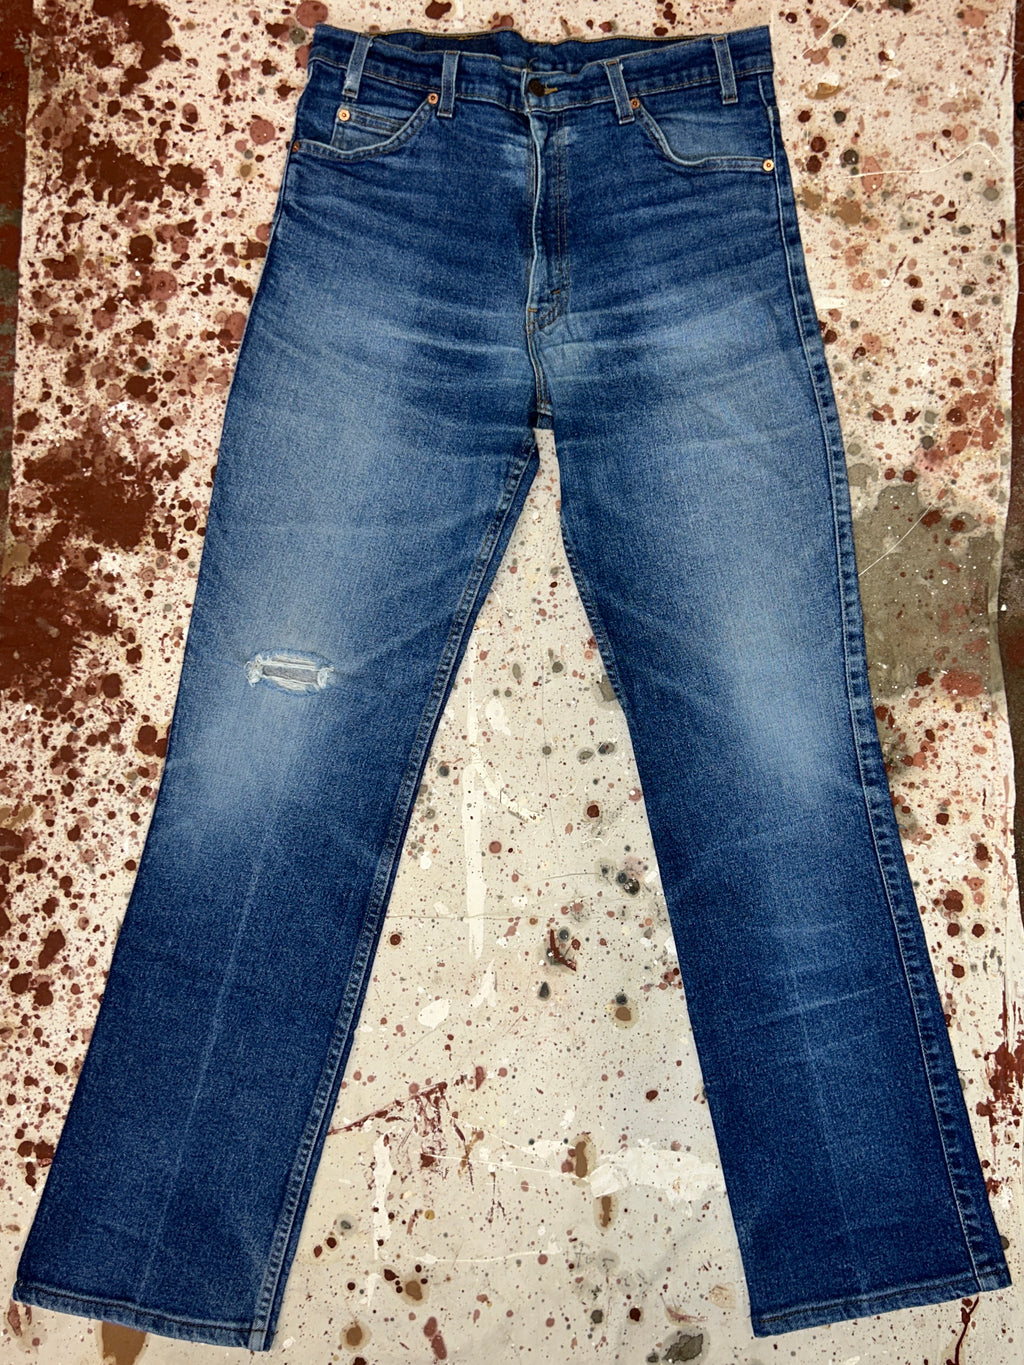 Vintage USA Levi's 517 Super Wash Denim Jeans (JYJ0424-618)